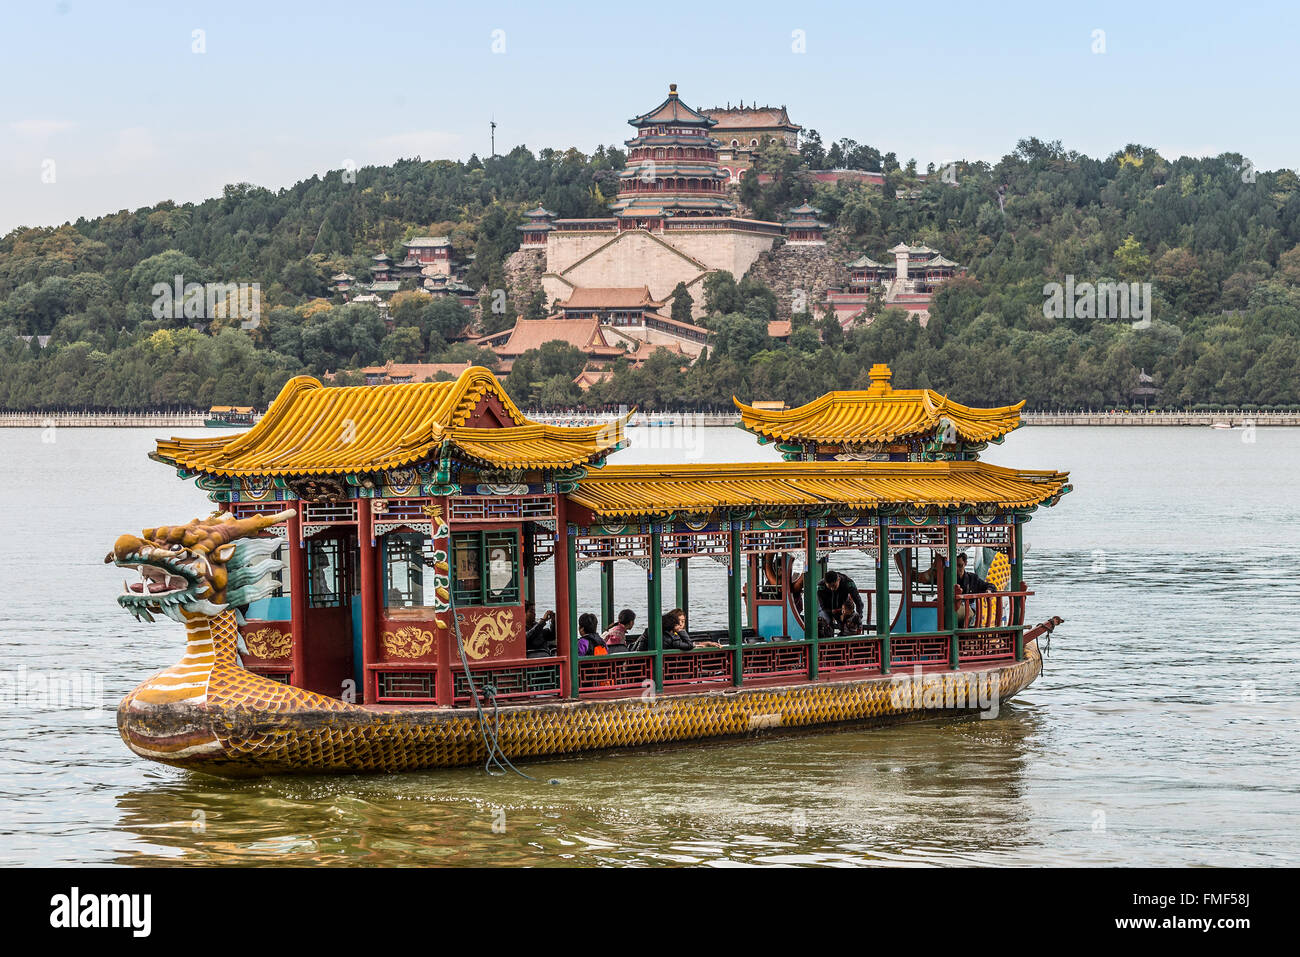 Les touristes sur un bateau dragon flottant sur le lac Kunming, Beijing, Chine. Palais d'été de l'arrière-plan. Banque D'Images